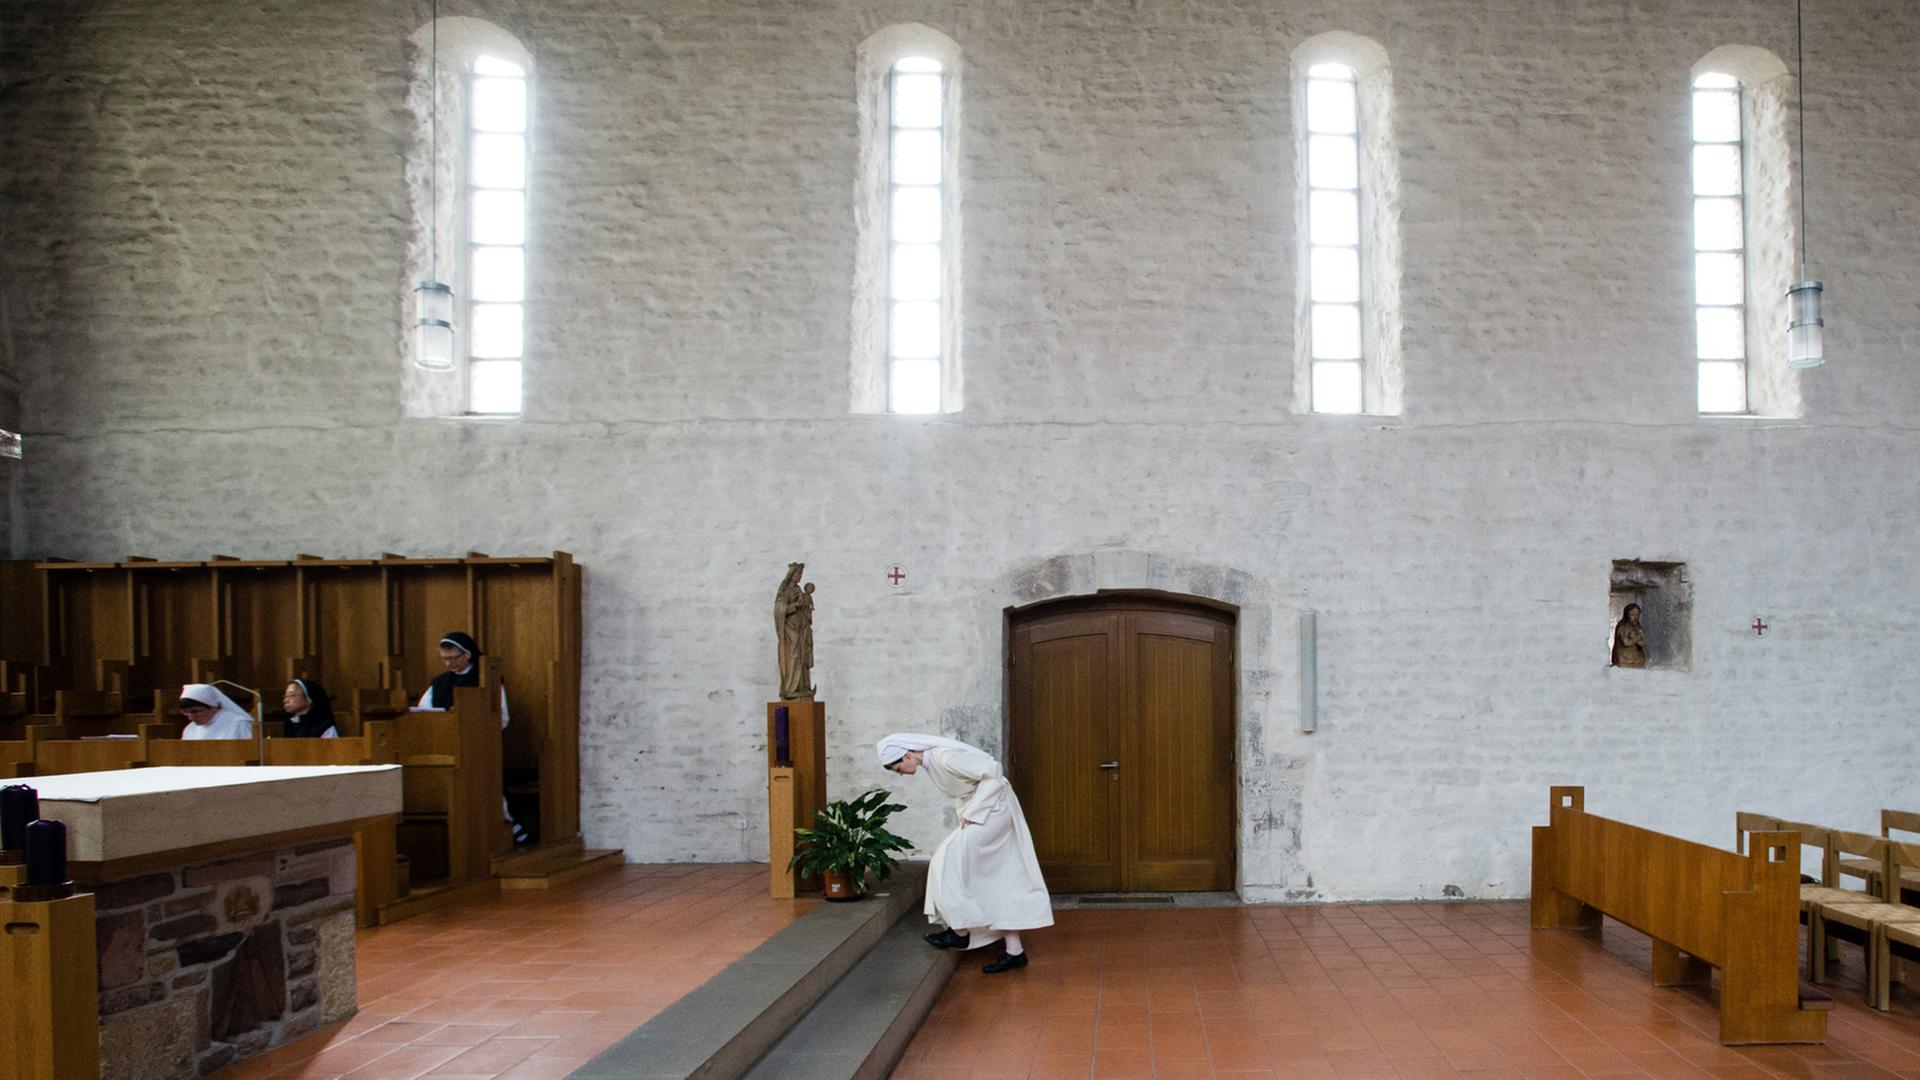 Eine Novizin verbeugt sich vor dem Altar in einer Klosterkirche.